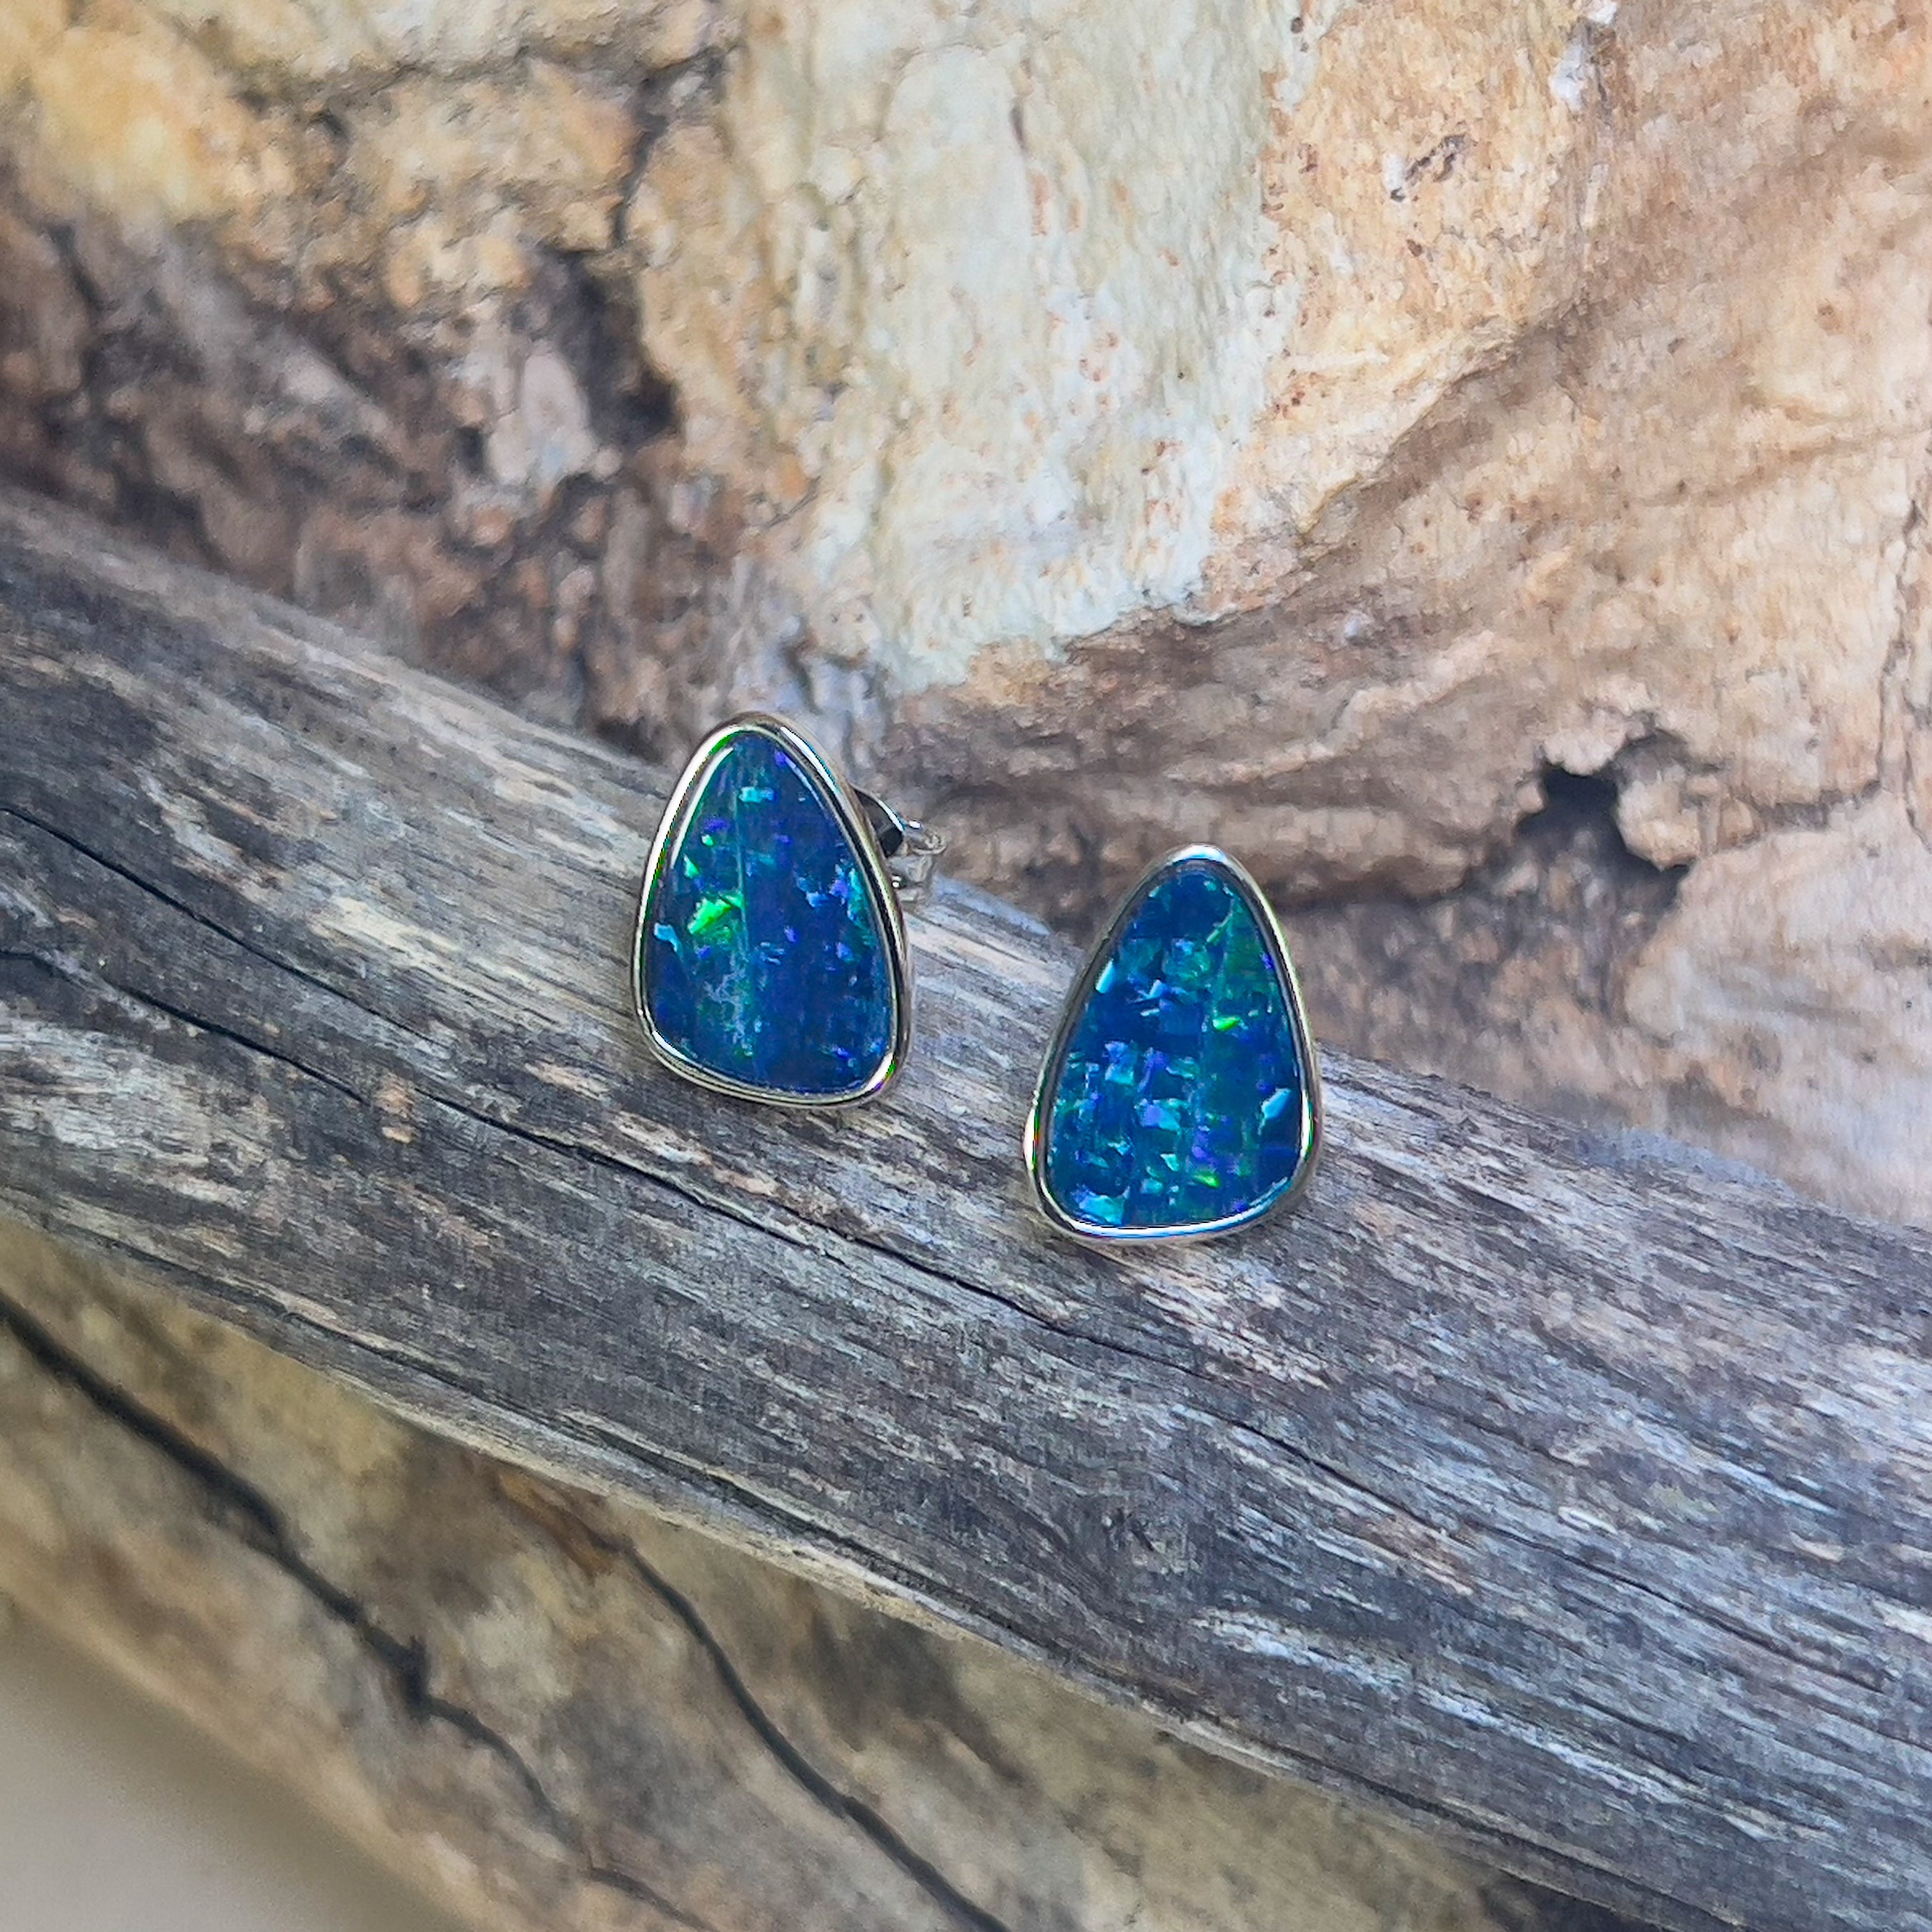 Sterling Silver freeform blue opal studs - Masterpiece Jewellery Opal & Gems Sydney Australia | Online Shop